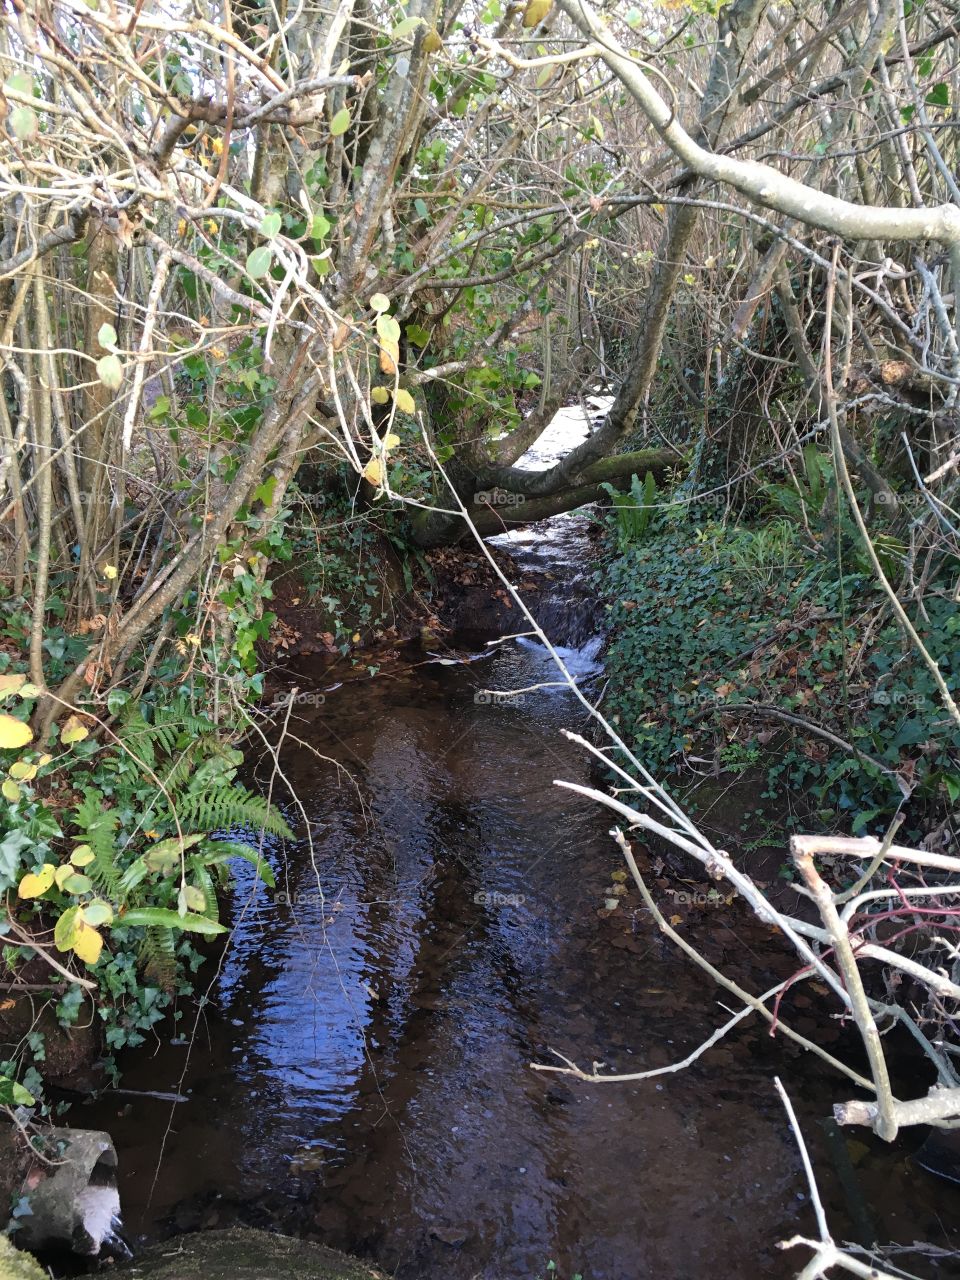 Delightful example of a Devon stream.